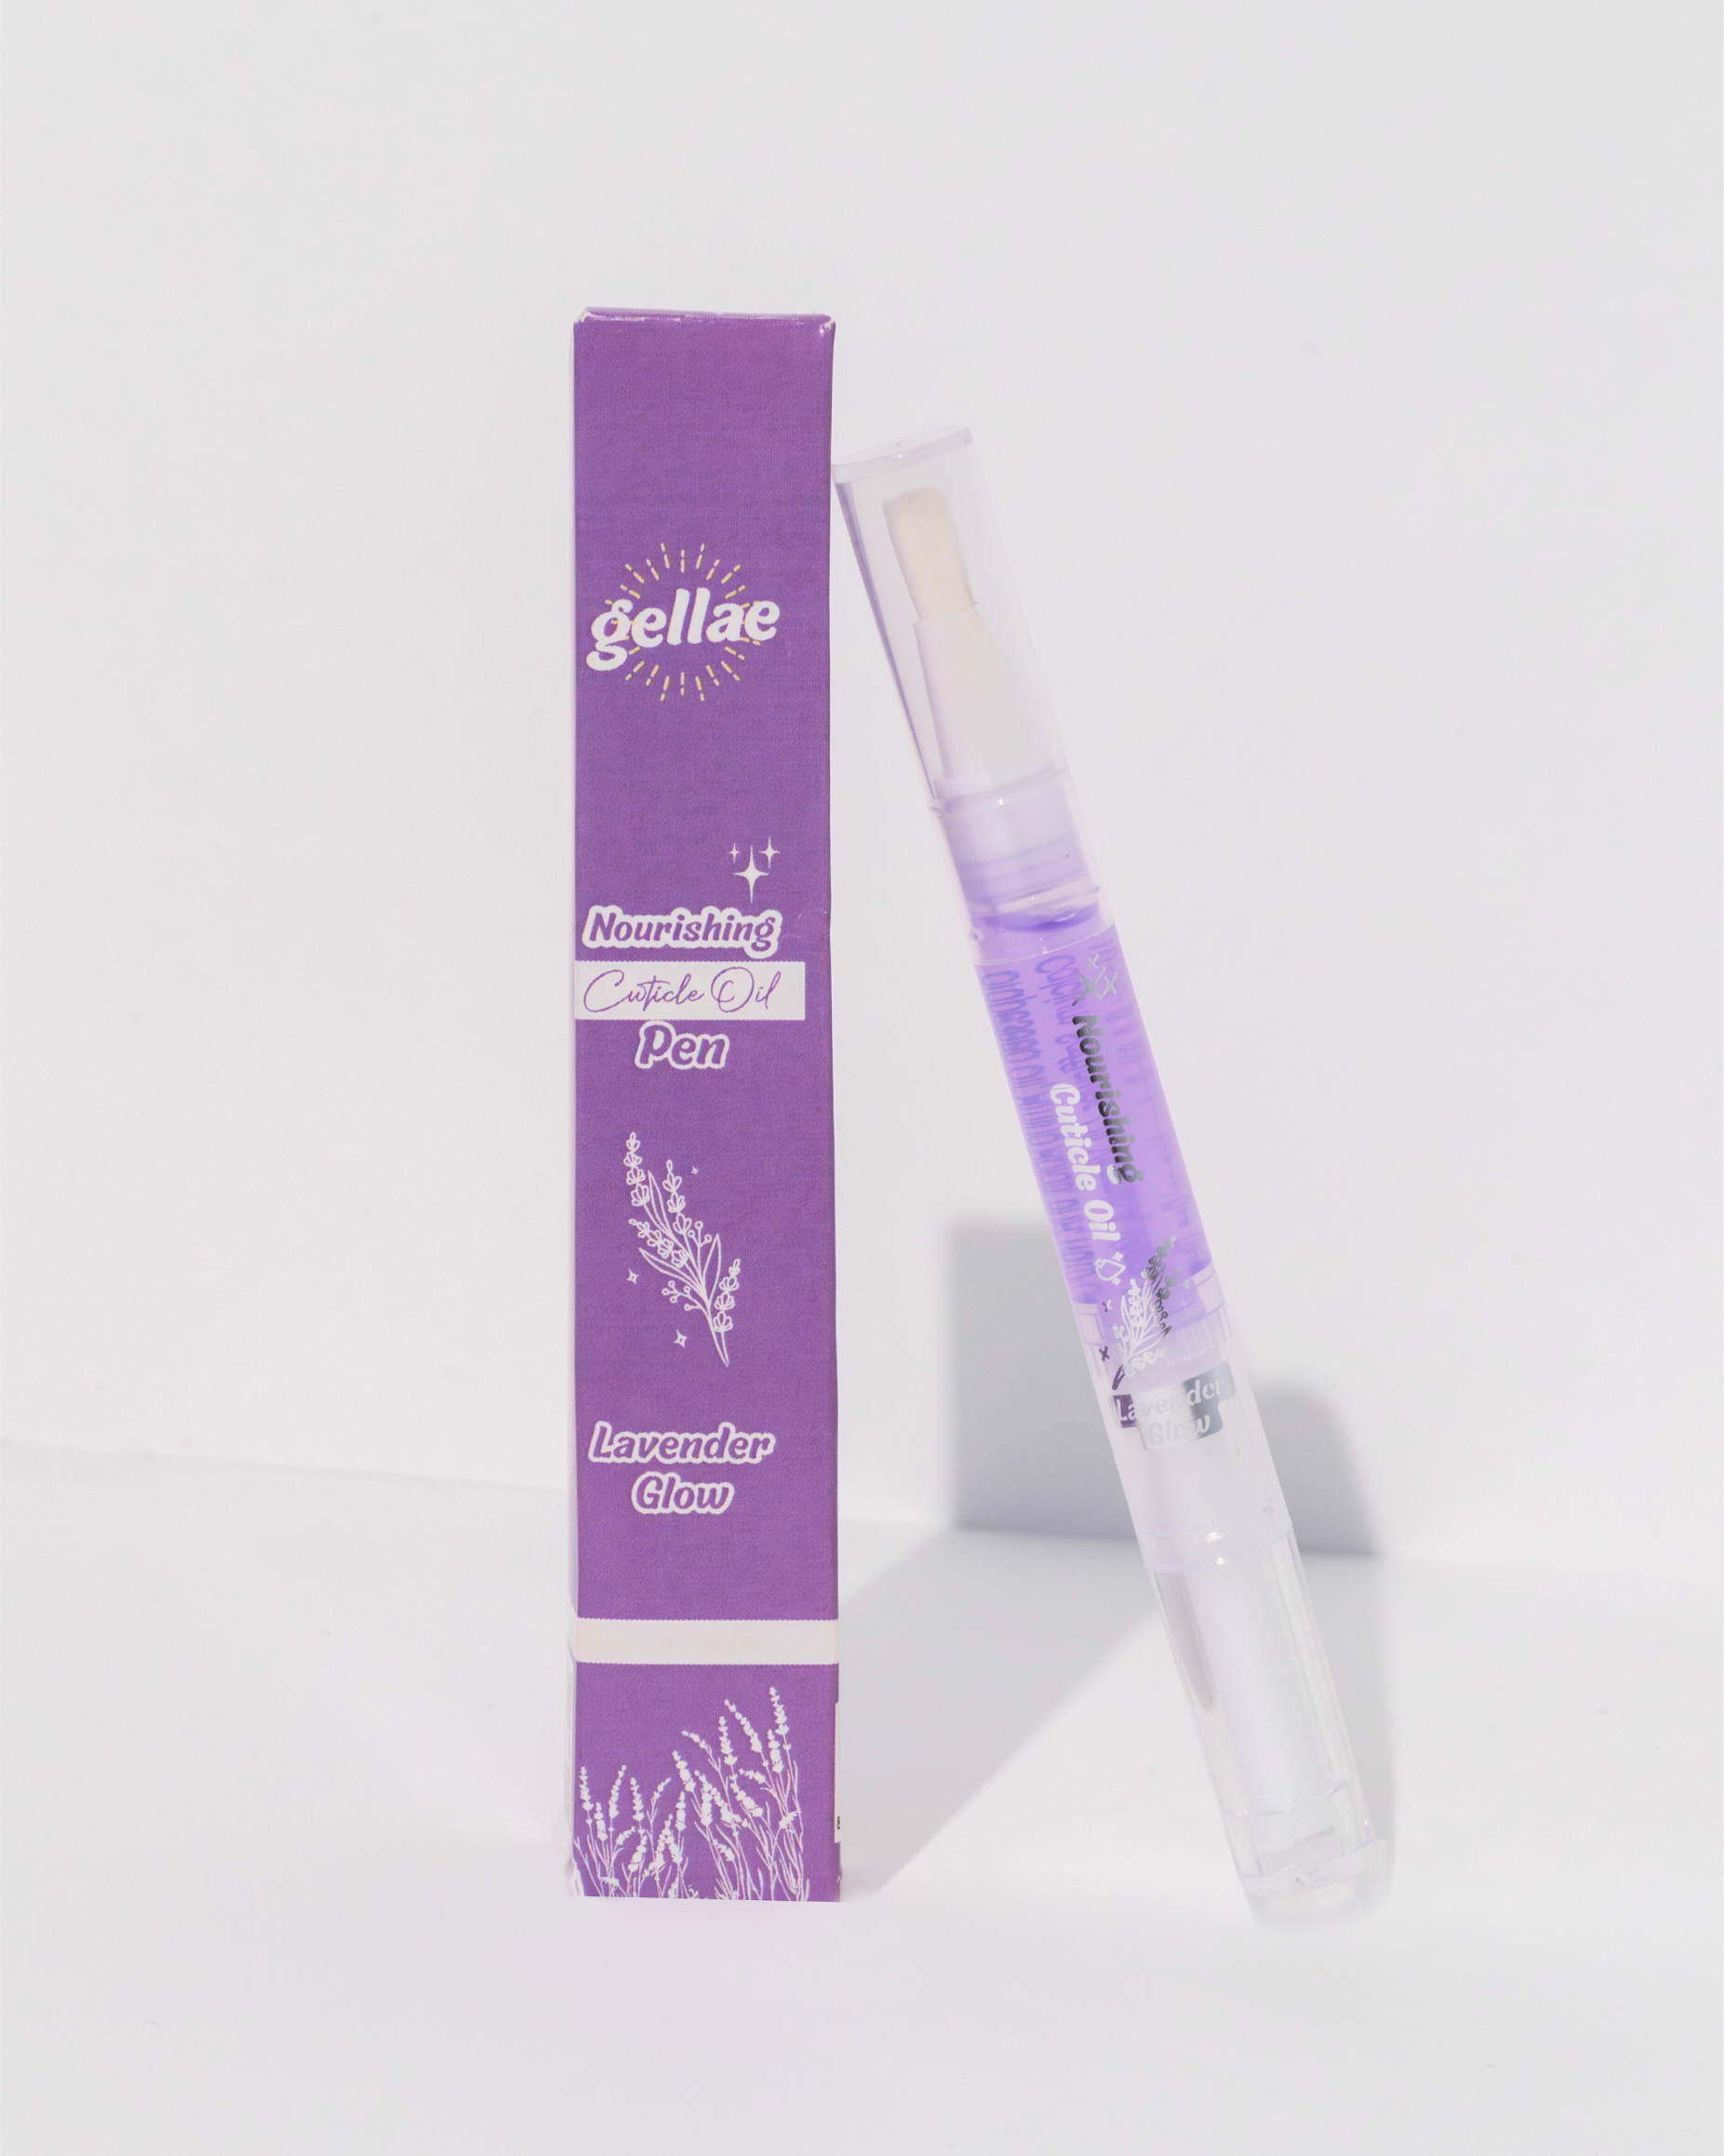 Gellae Nourishing Cuticle Oil Pen & Gellae Gel Nail Remover Lavender Glow 